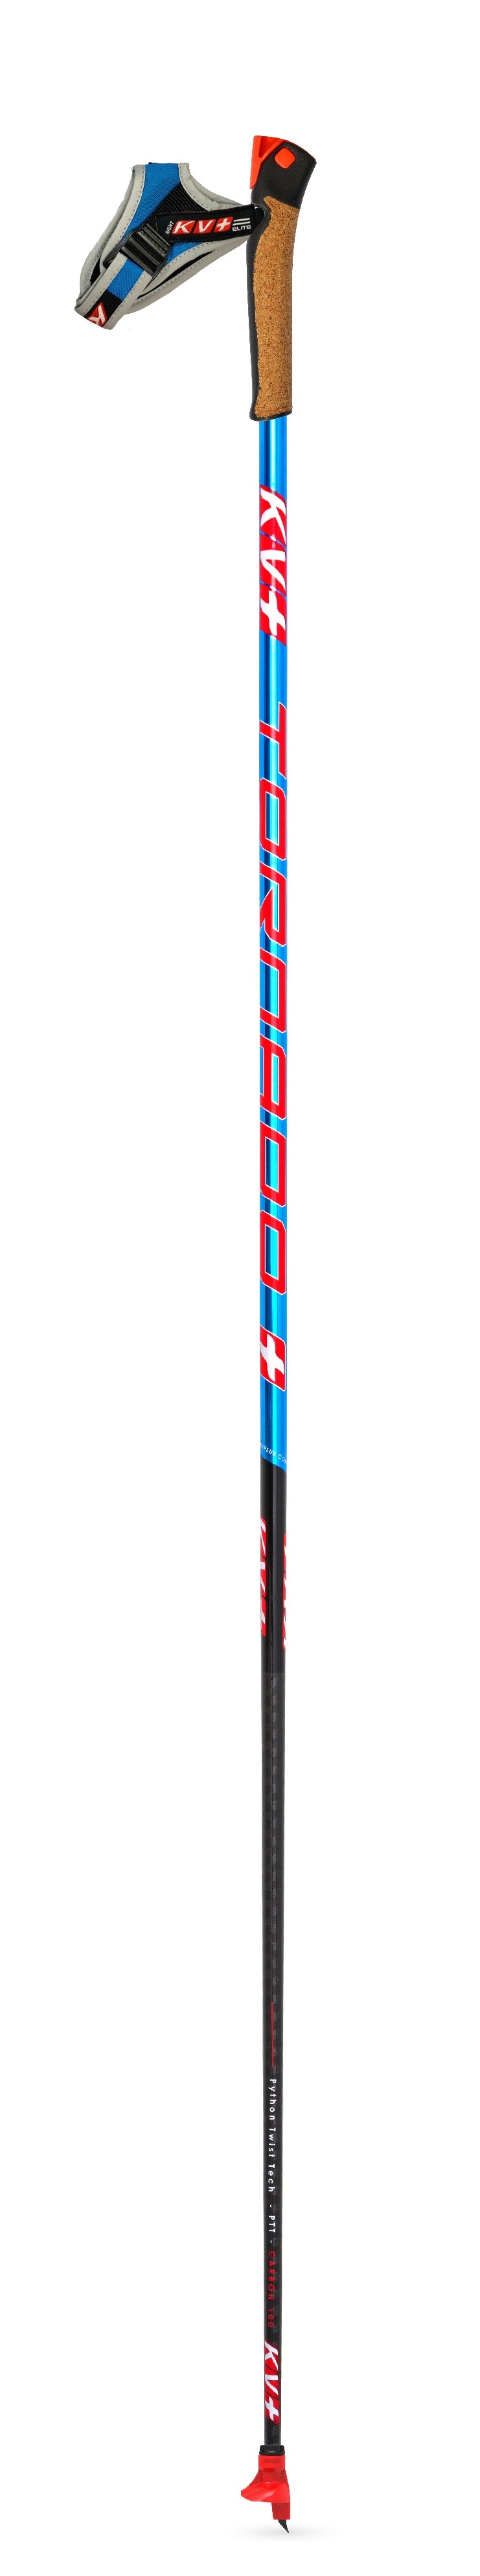 Лыжные палки KV+ Tornado light titan qcd, 21P011Q